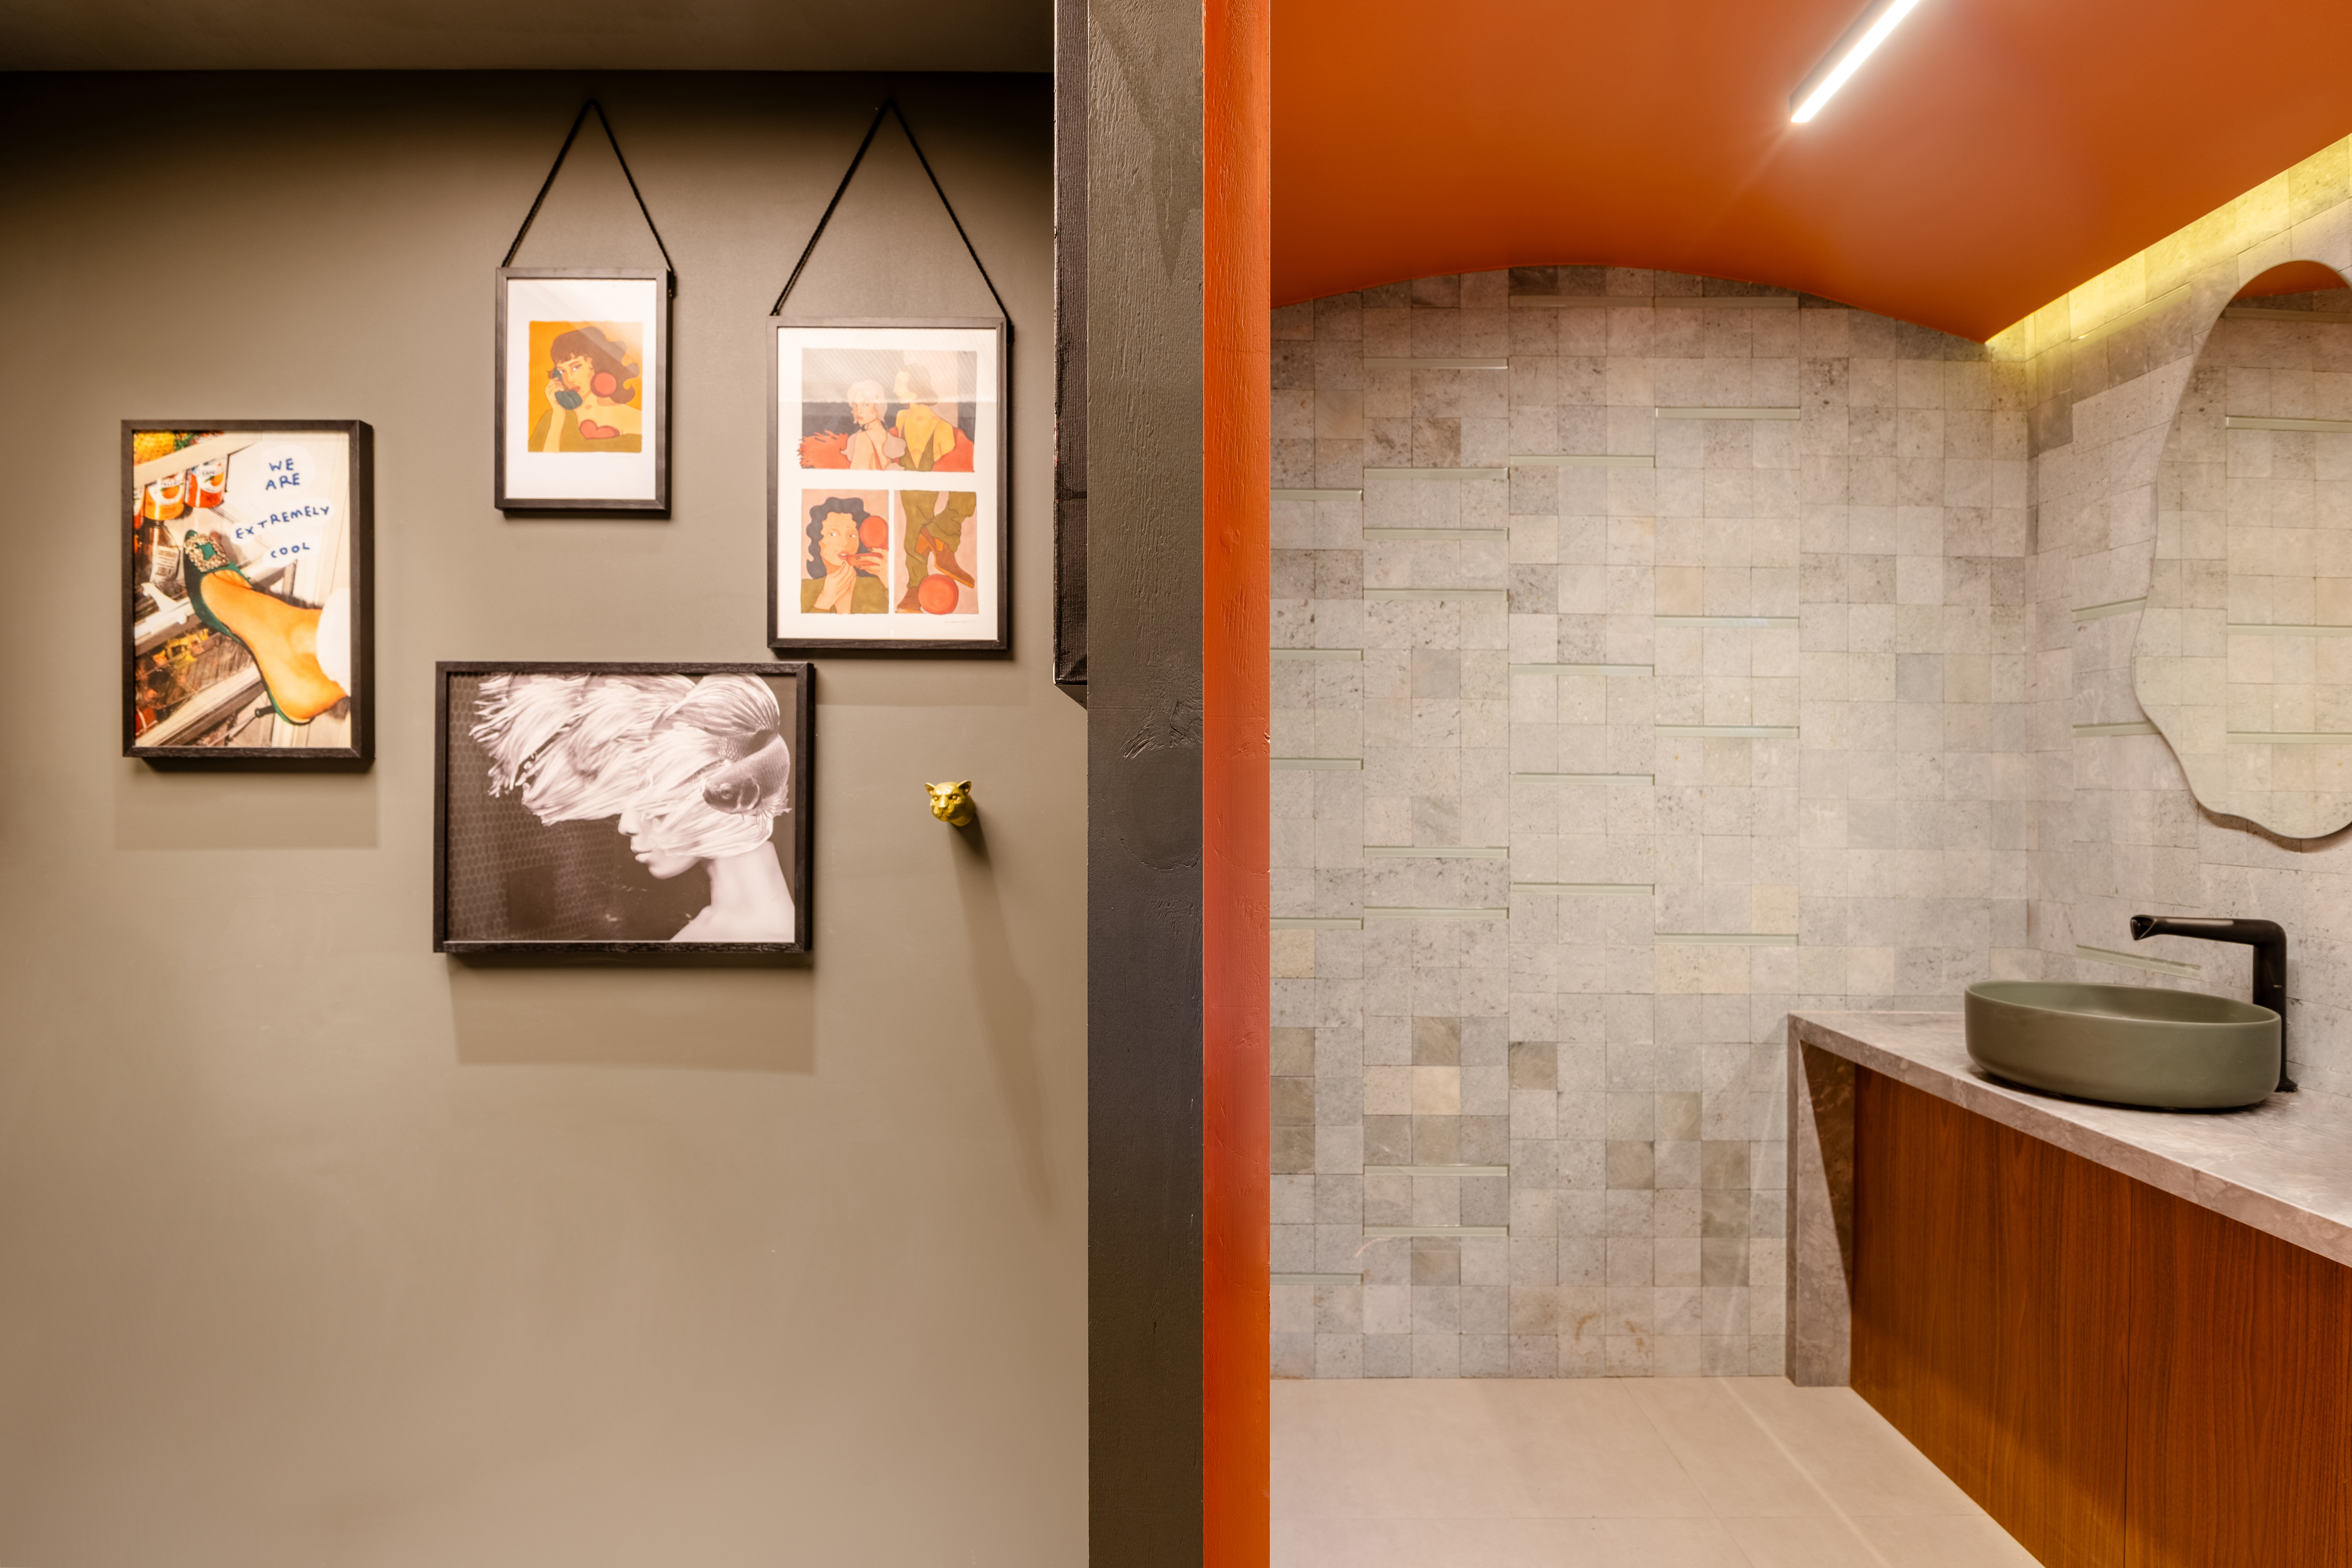 CASACOR Paraná: ambiente brinca com texturas, cores e sensações. Projeto de Fernanda Gonçalves. Na foto, banheiro com parede laranja e parede de tijolinhos